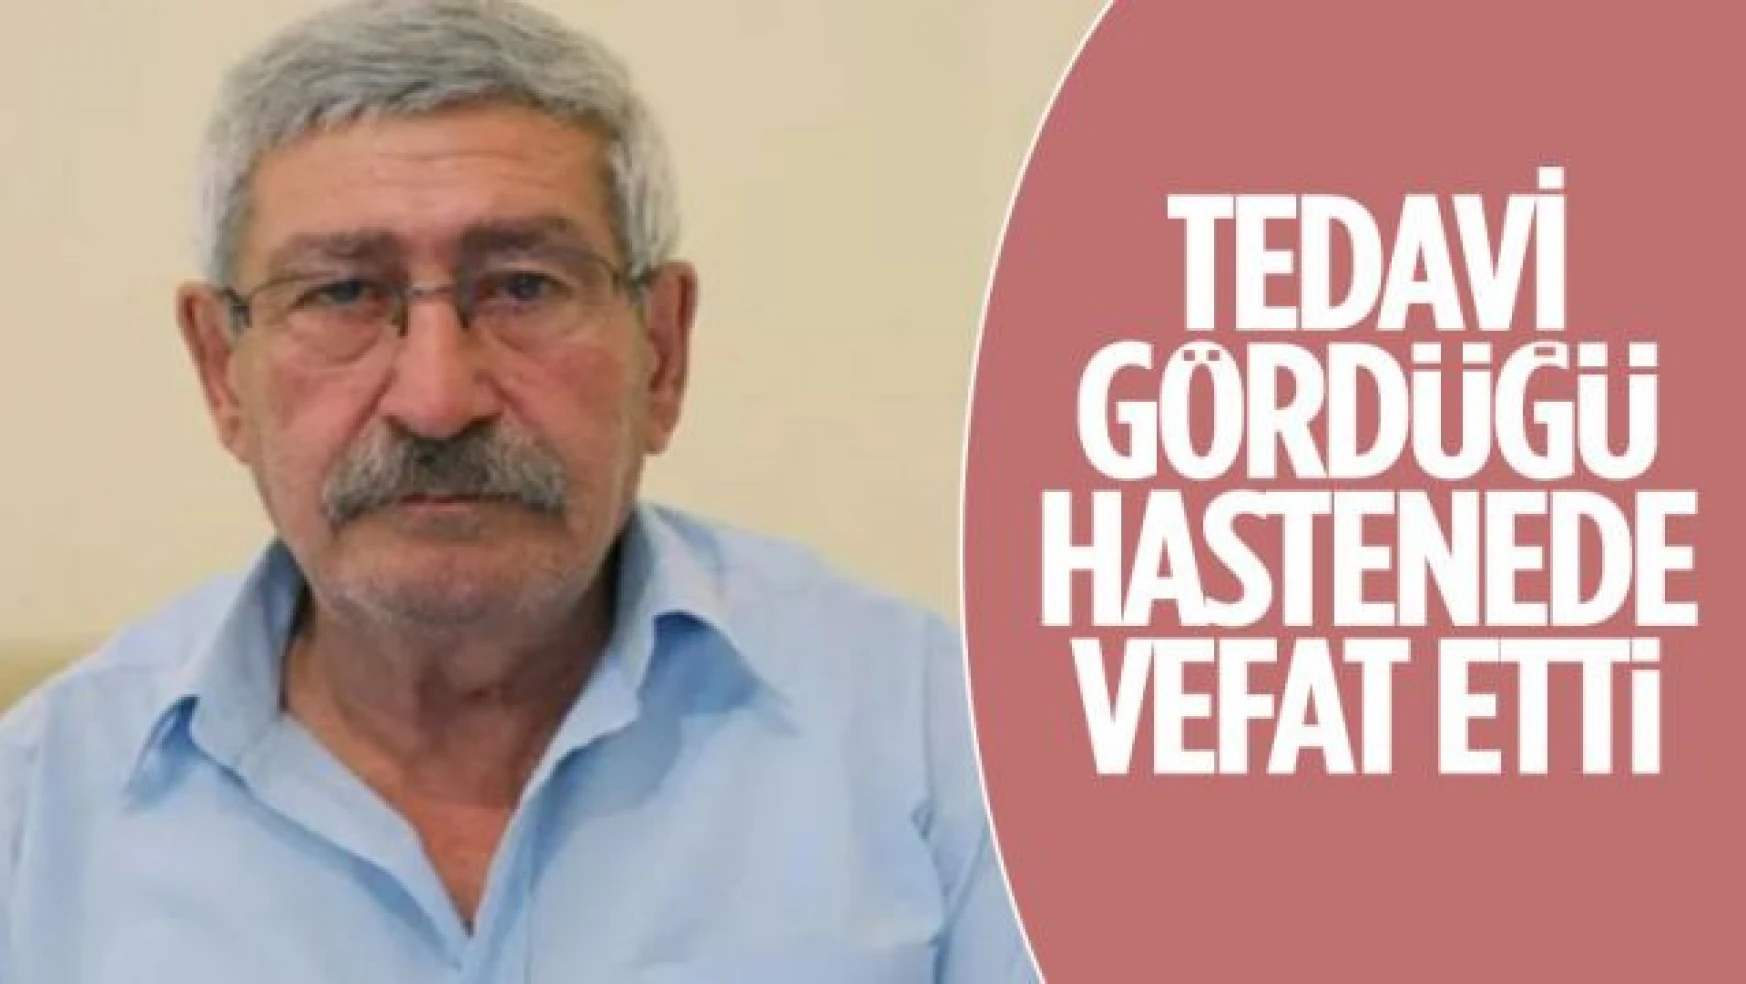 Celal Kılıçdaroğlu hayatını kaybetti